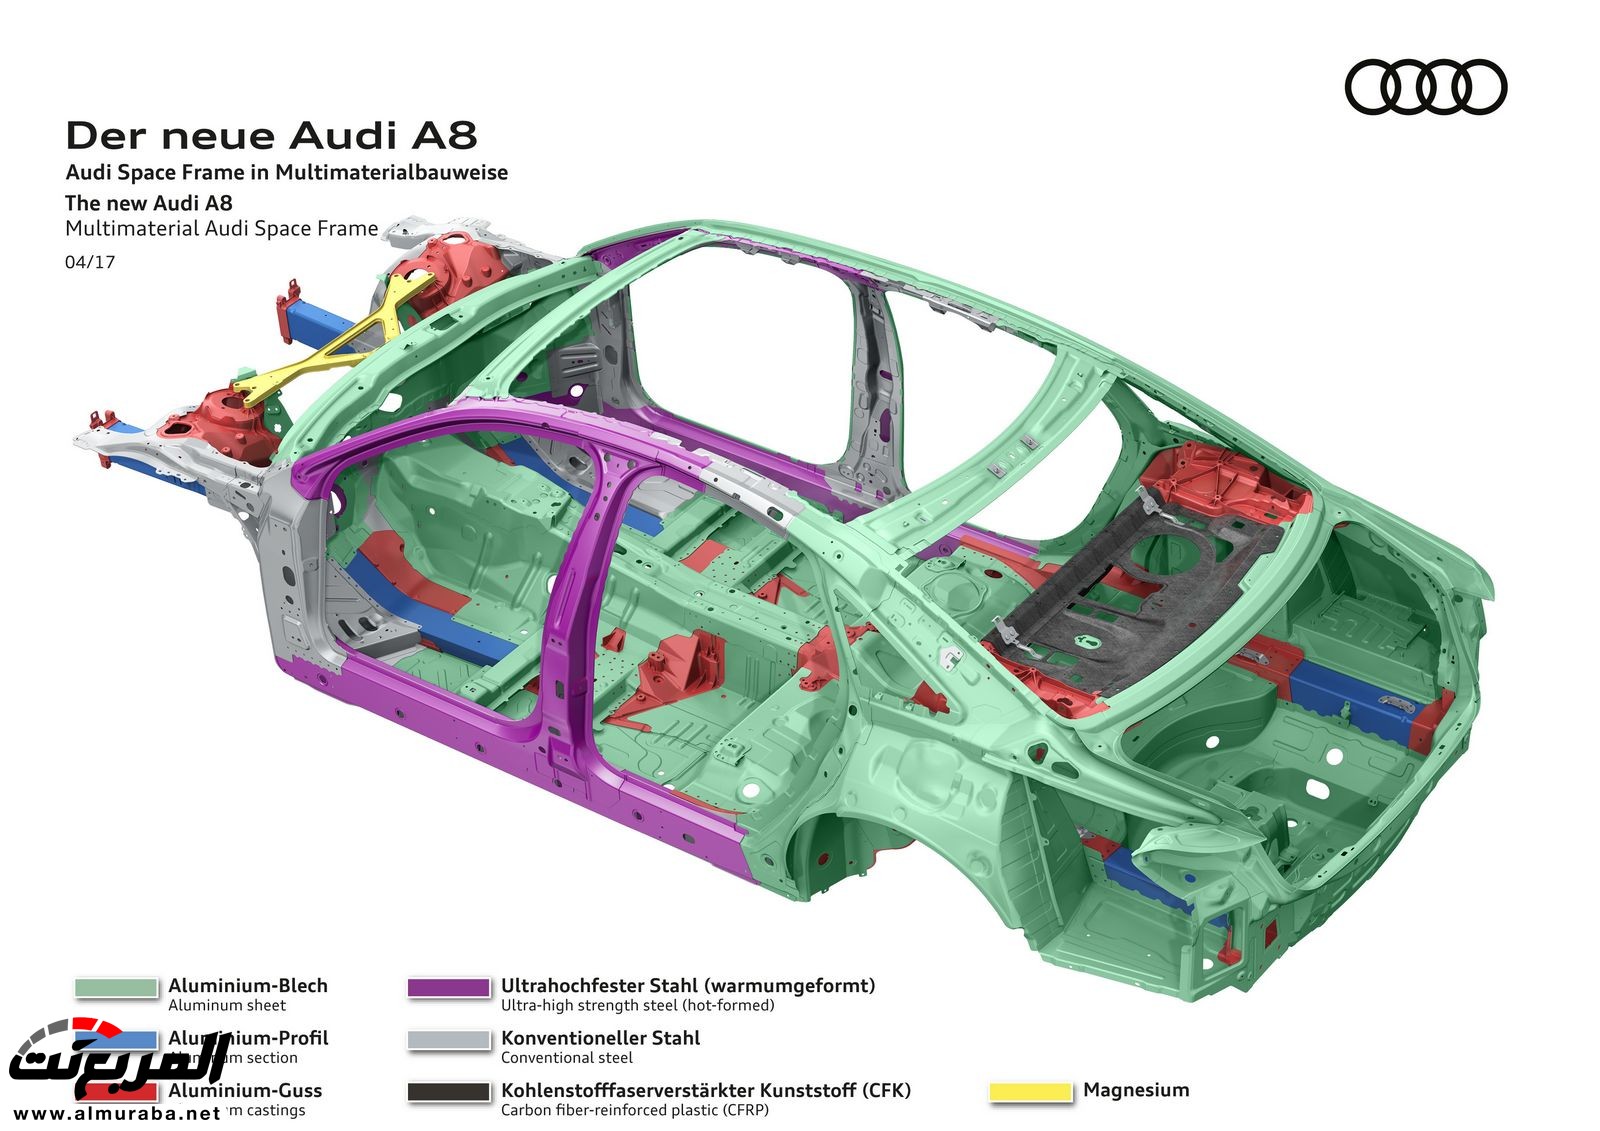 أودي A8 2018 الجديدة كلياً تكشف نفسها بتصميم وتقنيات متطورة "معلومات + 100 صورة" Audi A8 51